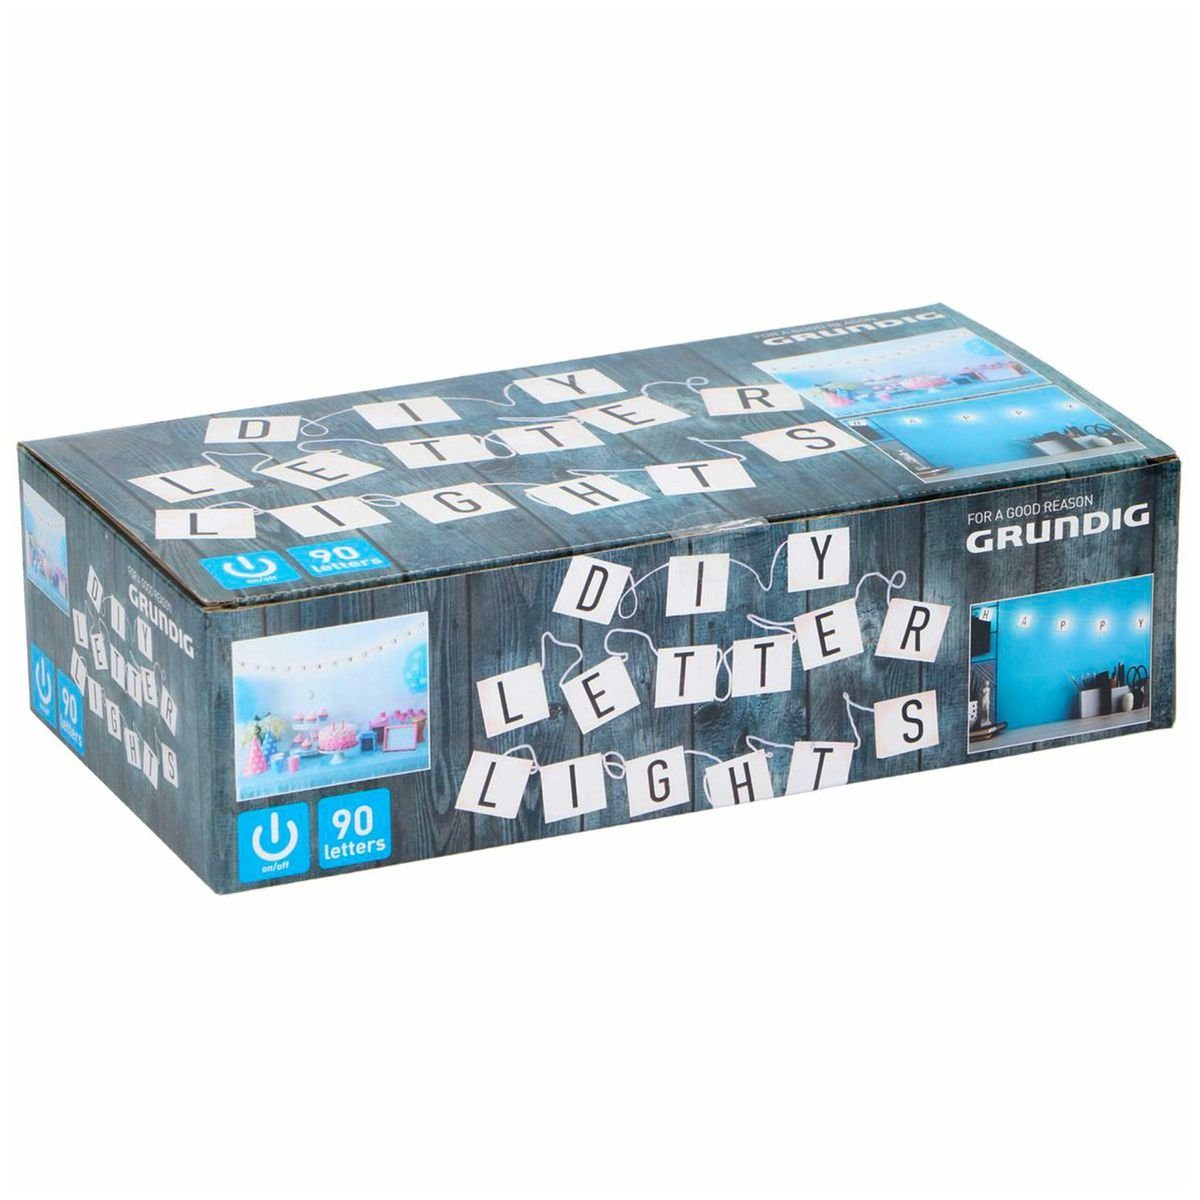 Grundig Lichterkette Letter Lichterkette LightBox 90 Symbole & Buchstaben Batteriebetrieben, inkl. Symbole und Buchstaben